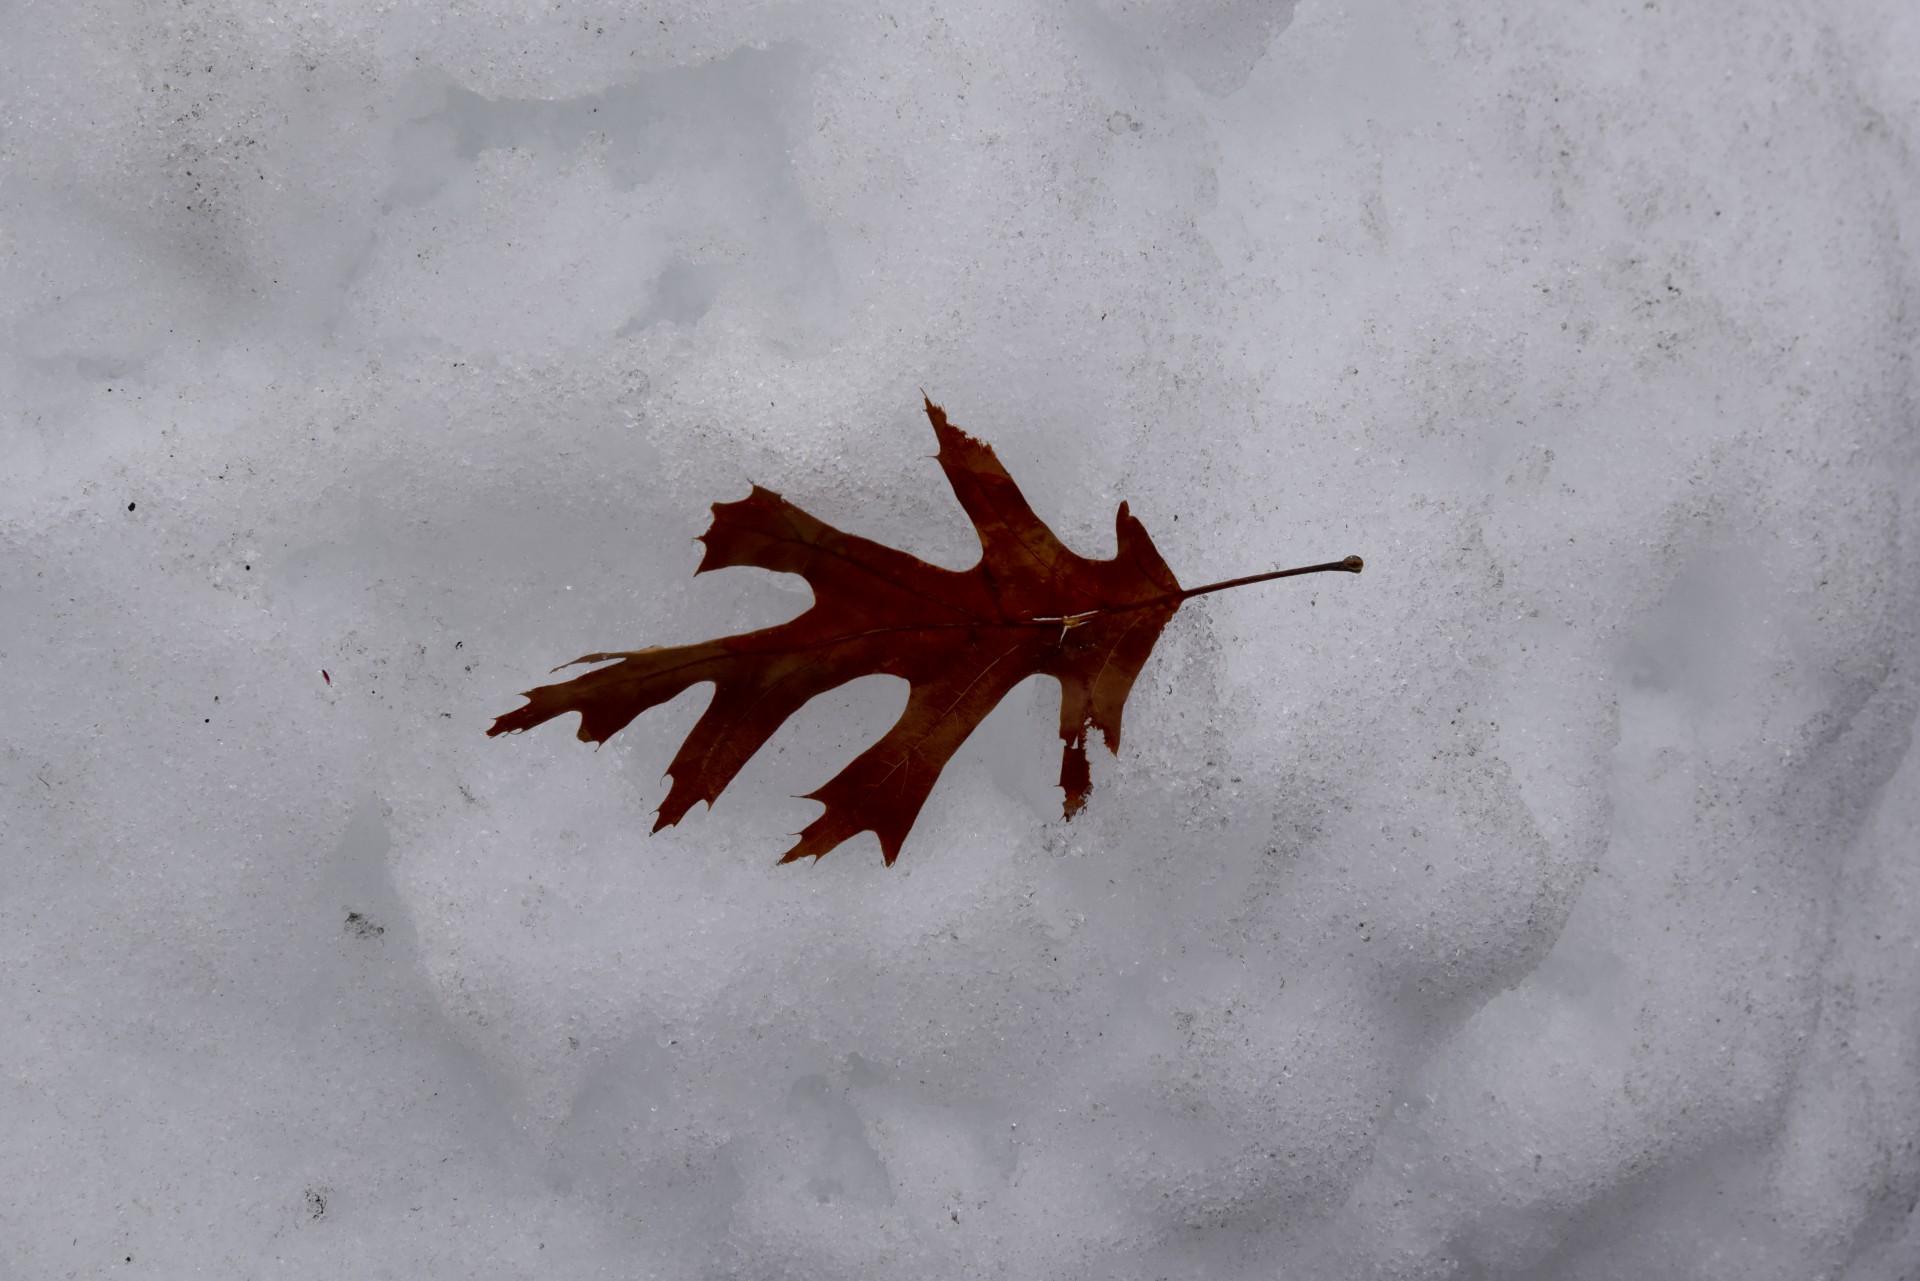 Сугробы листьев. Листья в снегу. Кленовый лист в снегу. Листочки в снегу. Листья клена зимой.